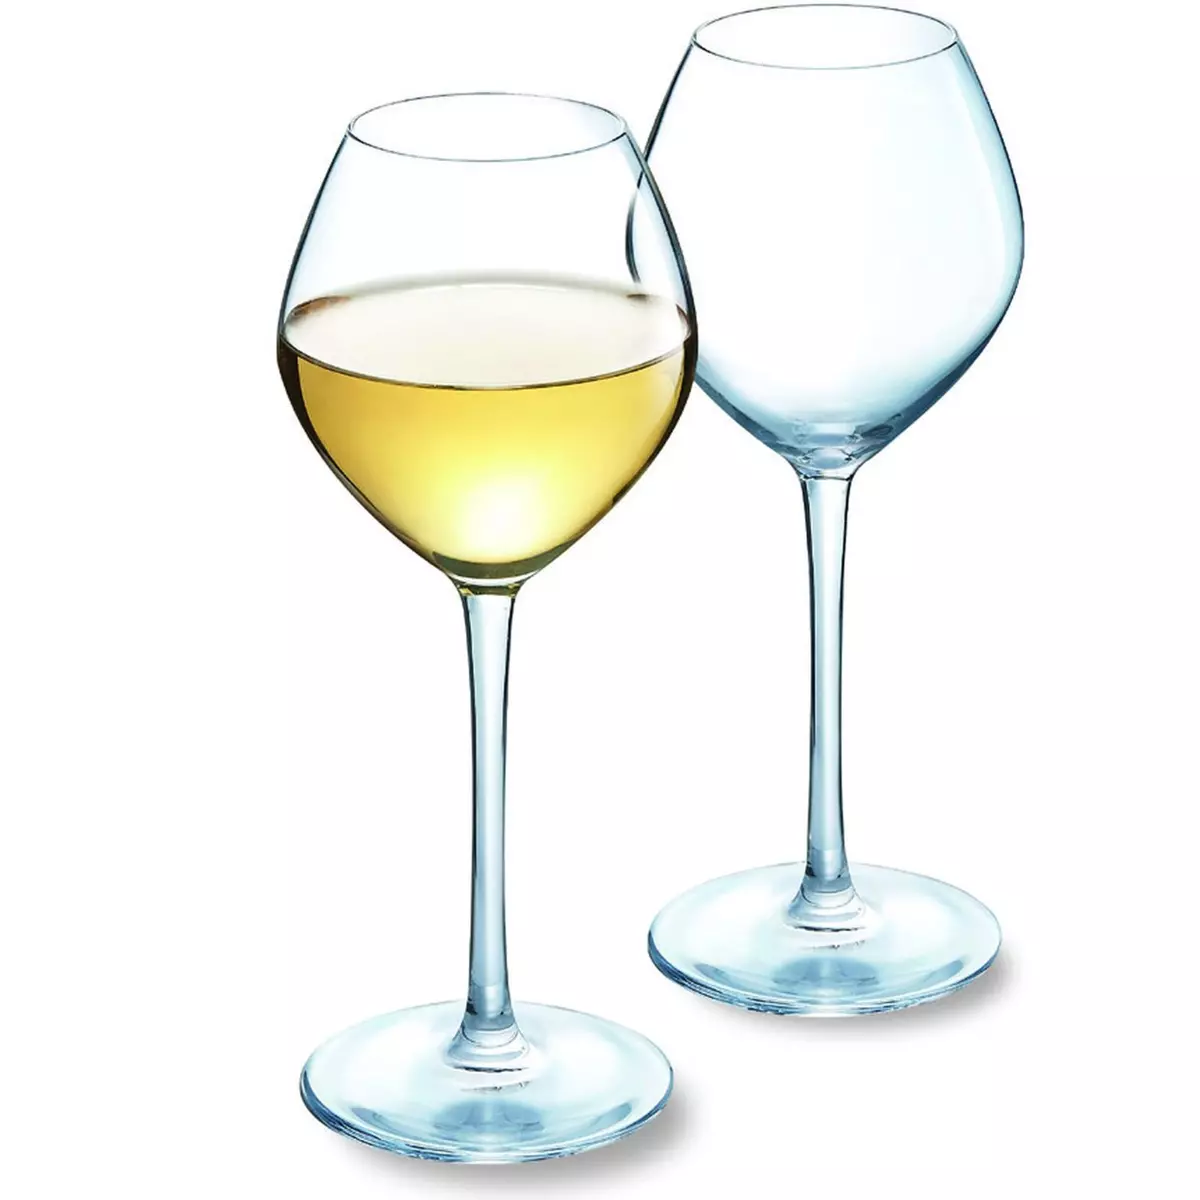 CHEF&SOMMELIER Chef&Sommelier set de 2 verres à vin blanc 35cl collector